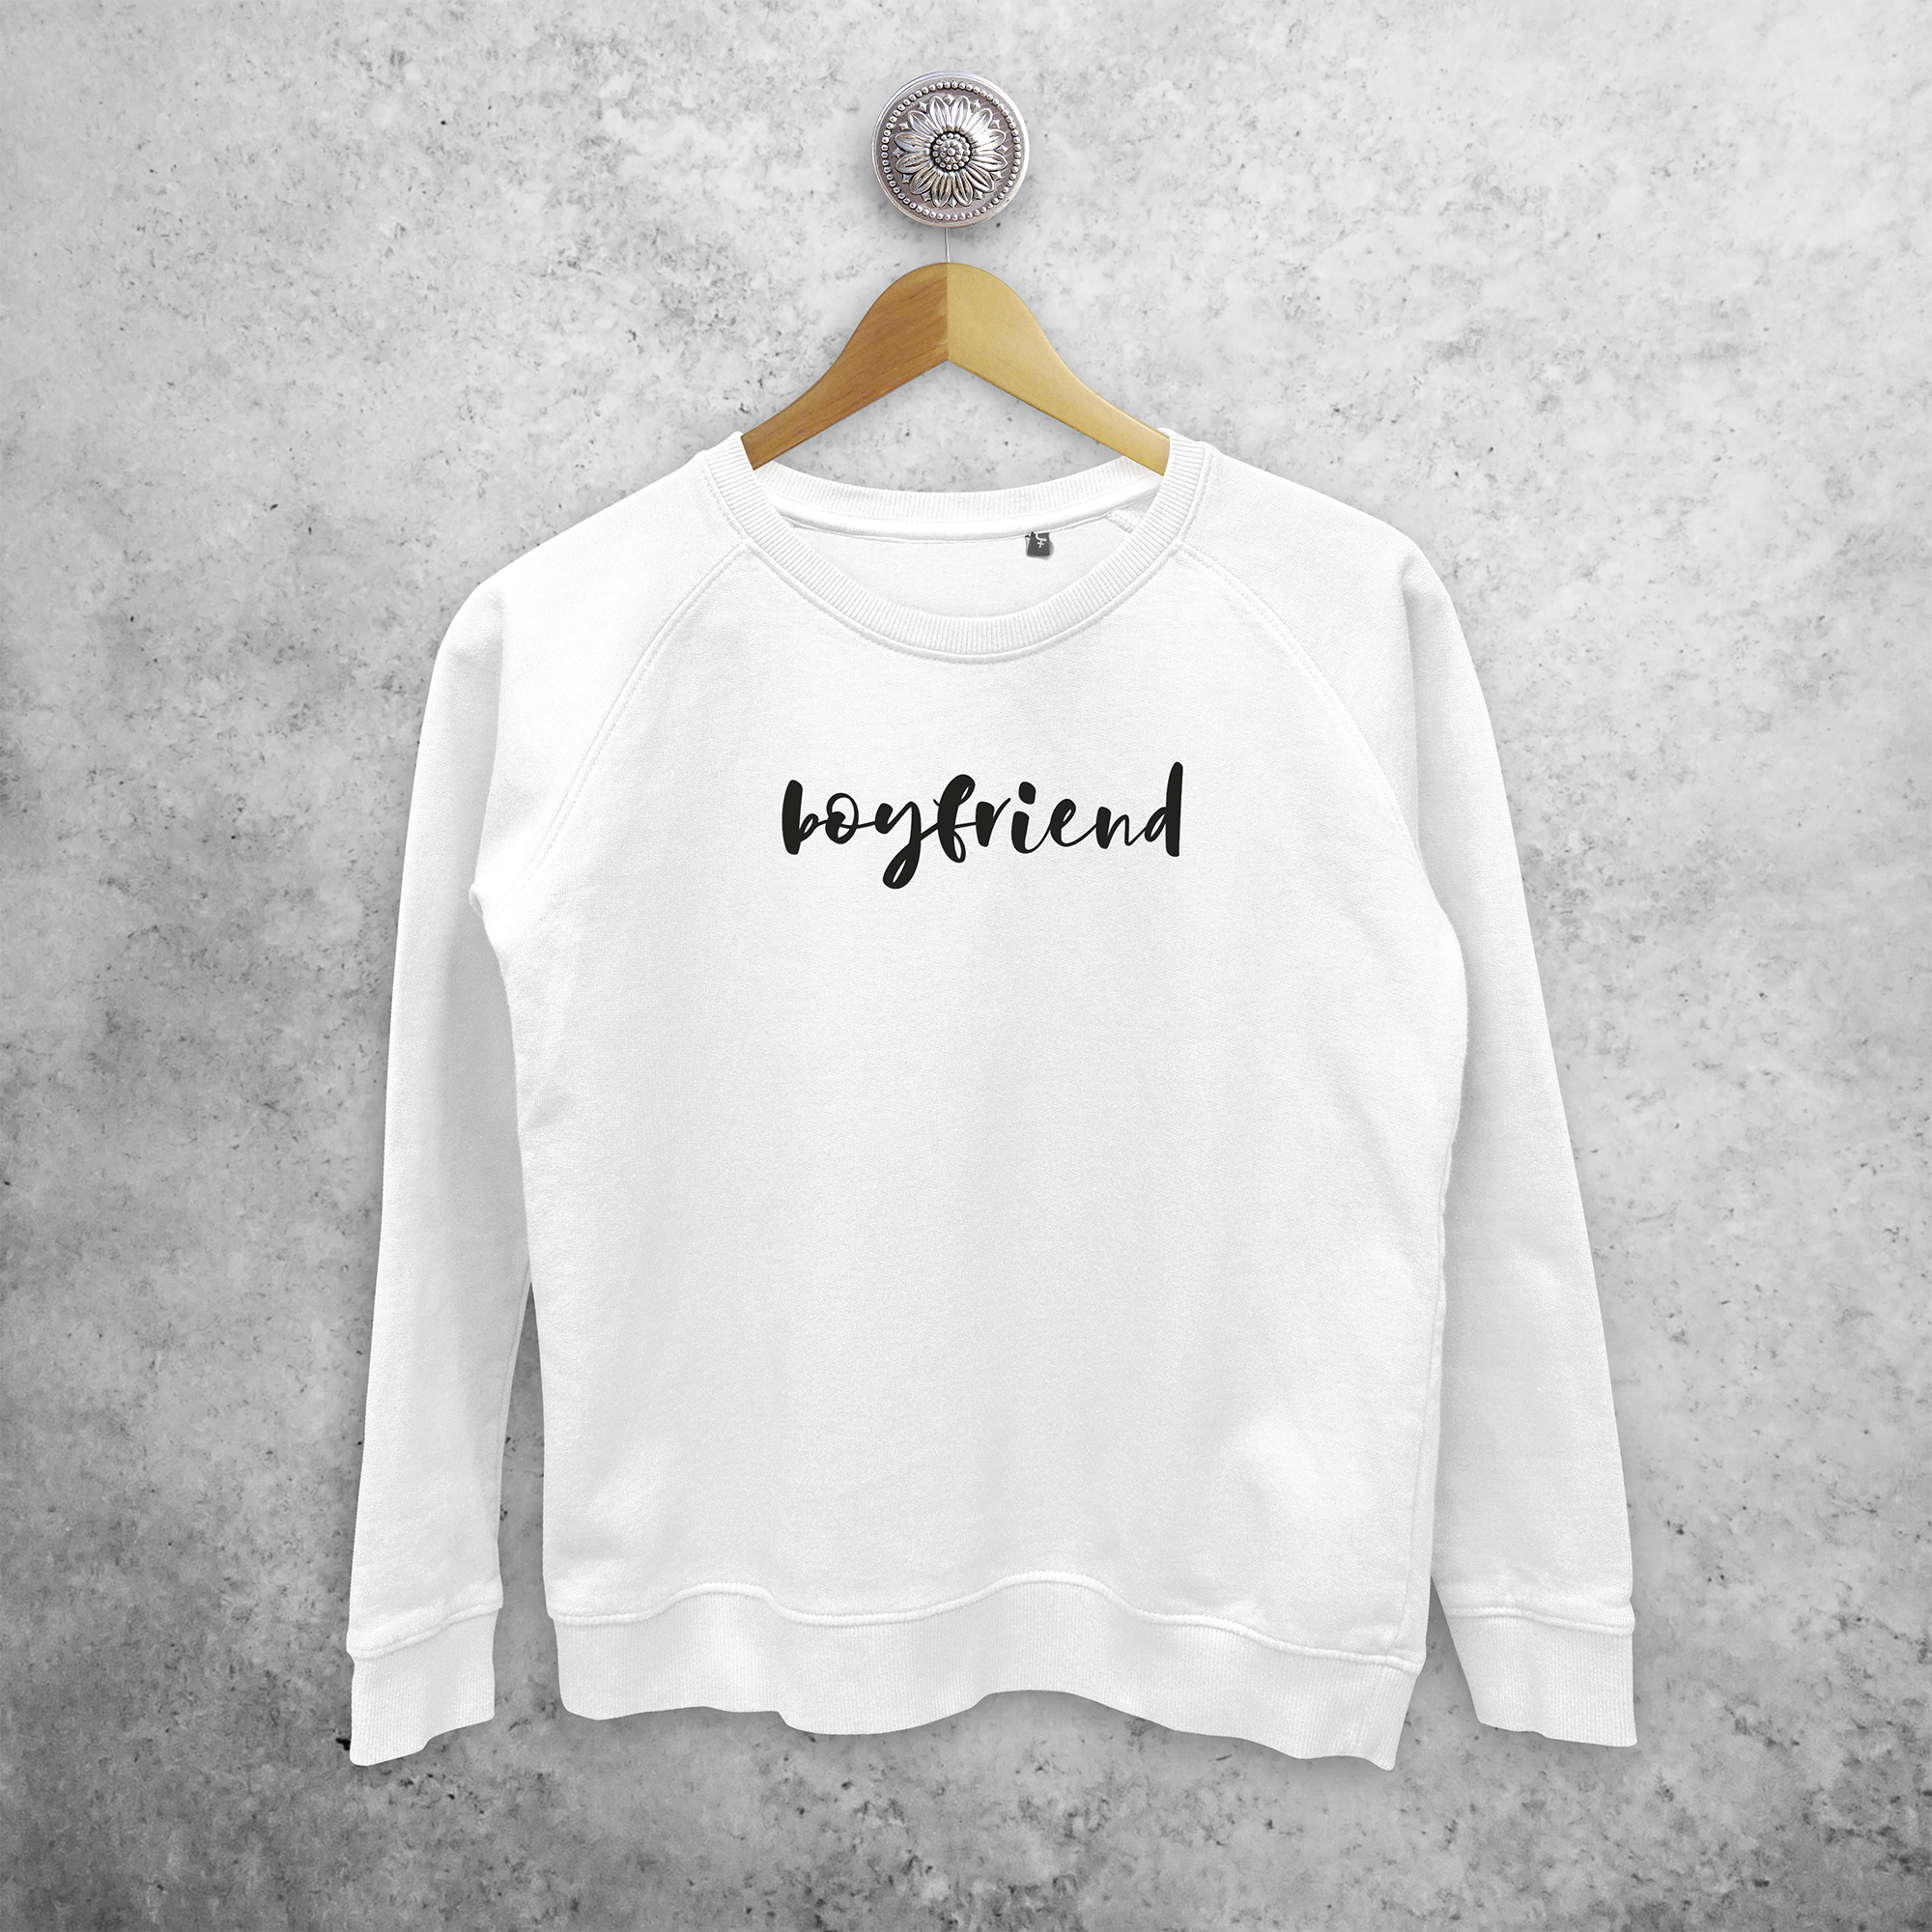 'Boyfriend' sweater